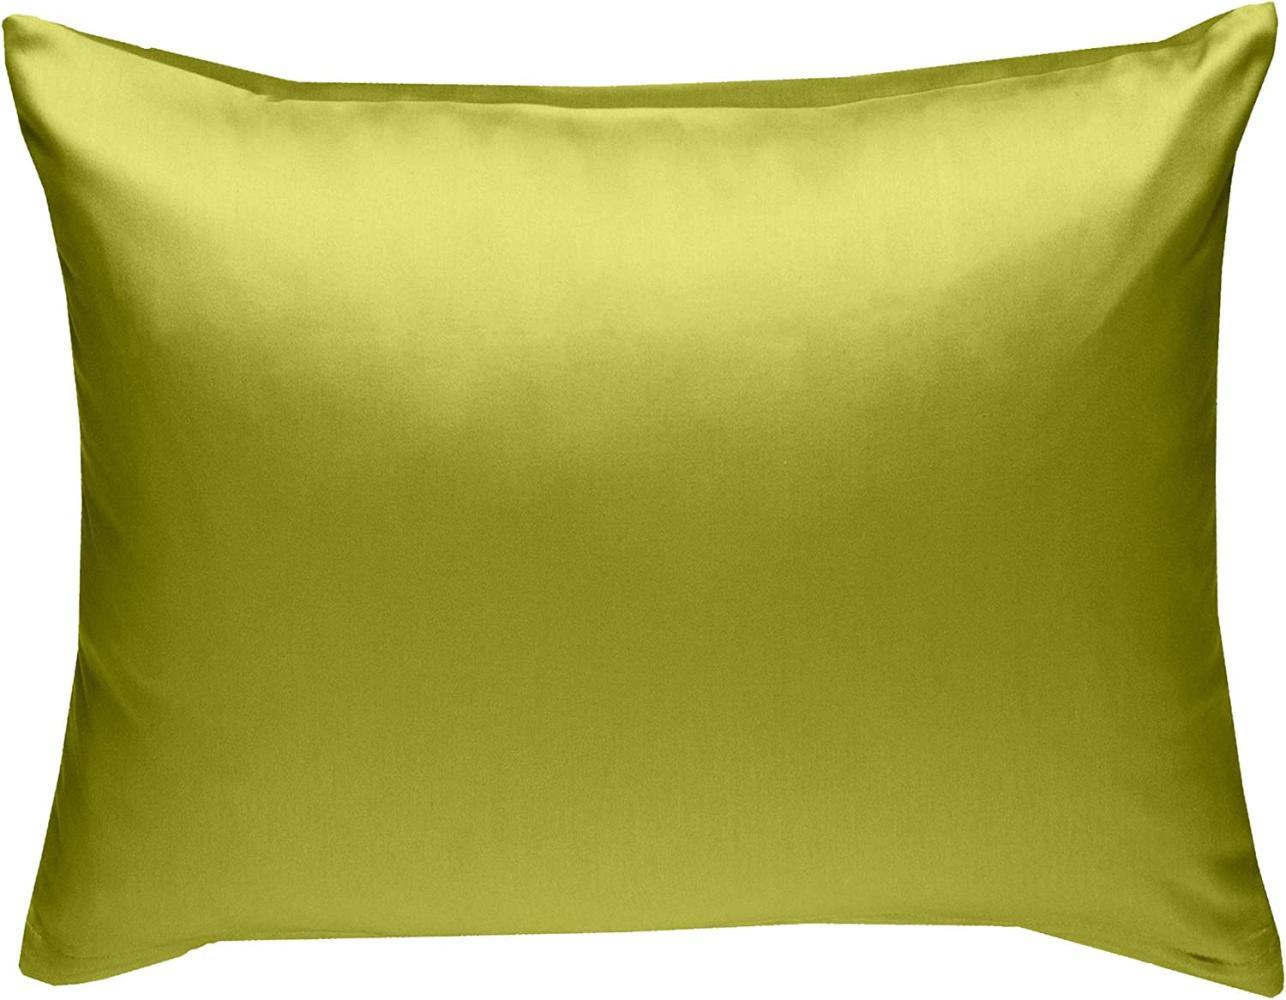 Bettwaesche-mit-Stil Mako-Satin / Baumwollsatin Bettwäsche uni / einfarbig grün Kissenbezug 70x90 cm Bild 1